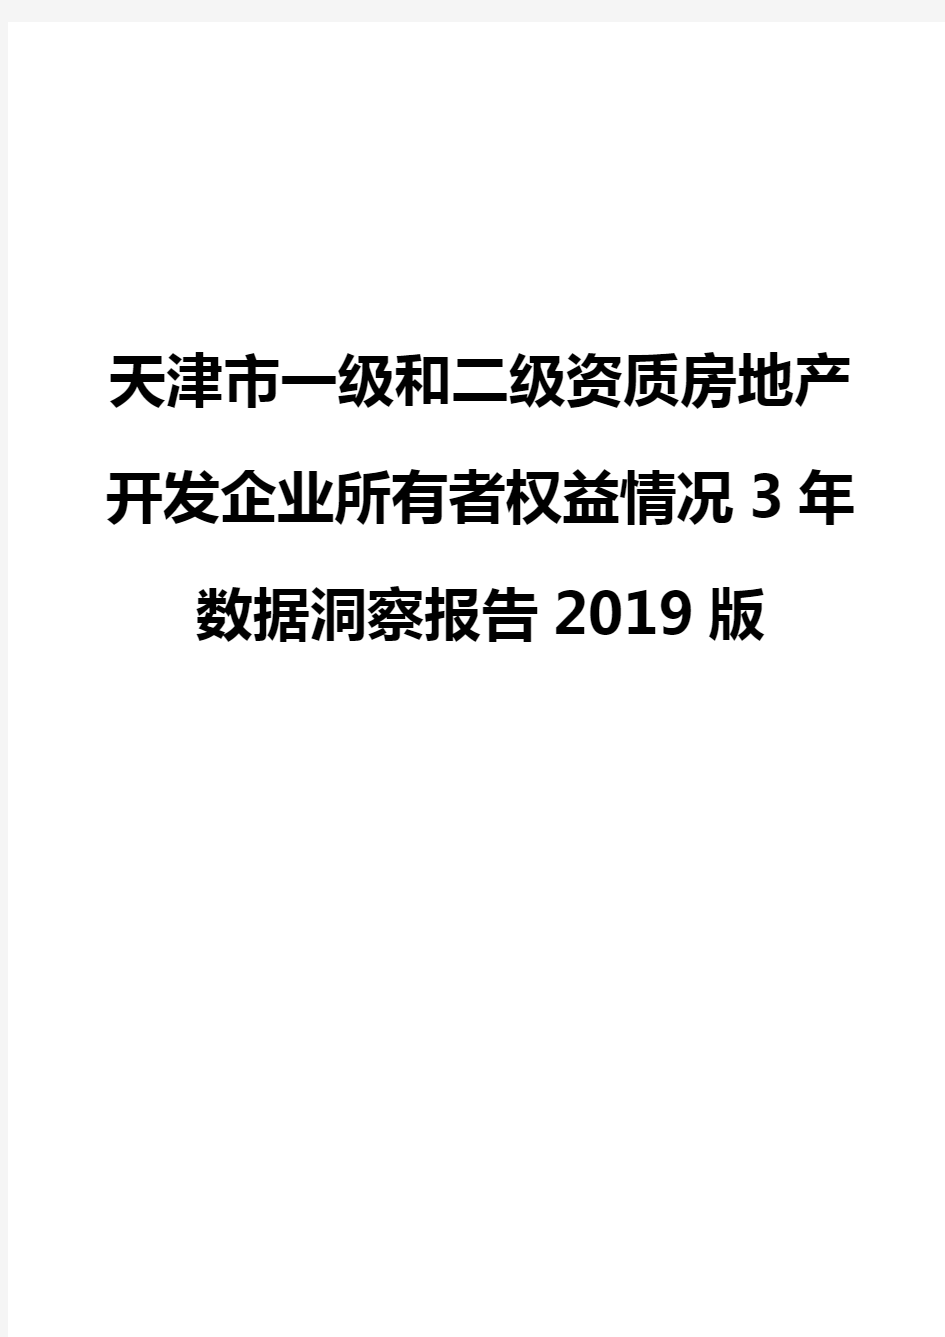 天津市一级和二级资质房地产开发企业所有者权益情况3年数据洞察报告2019版